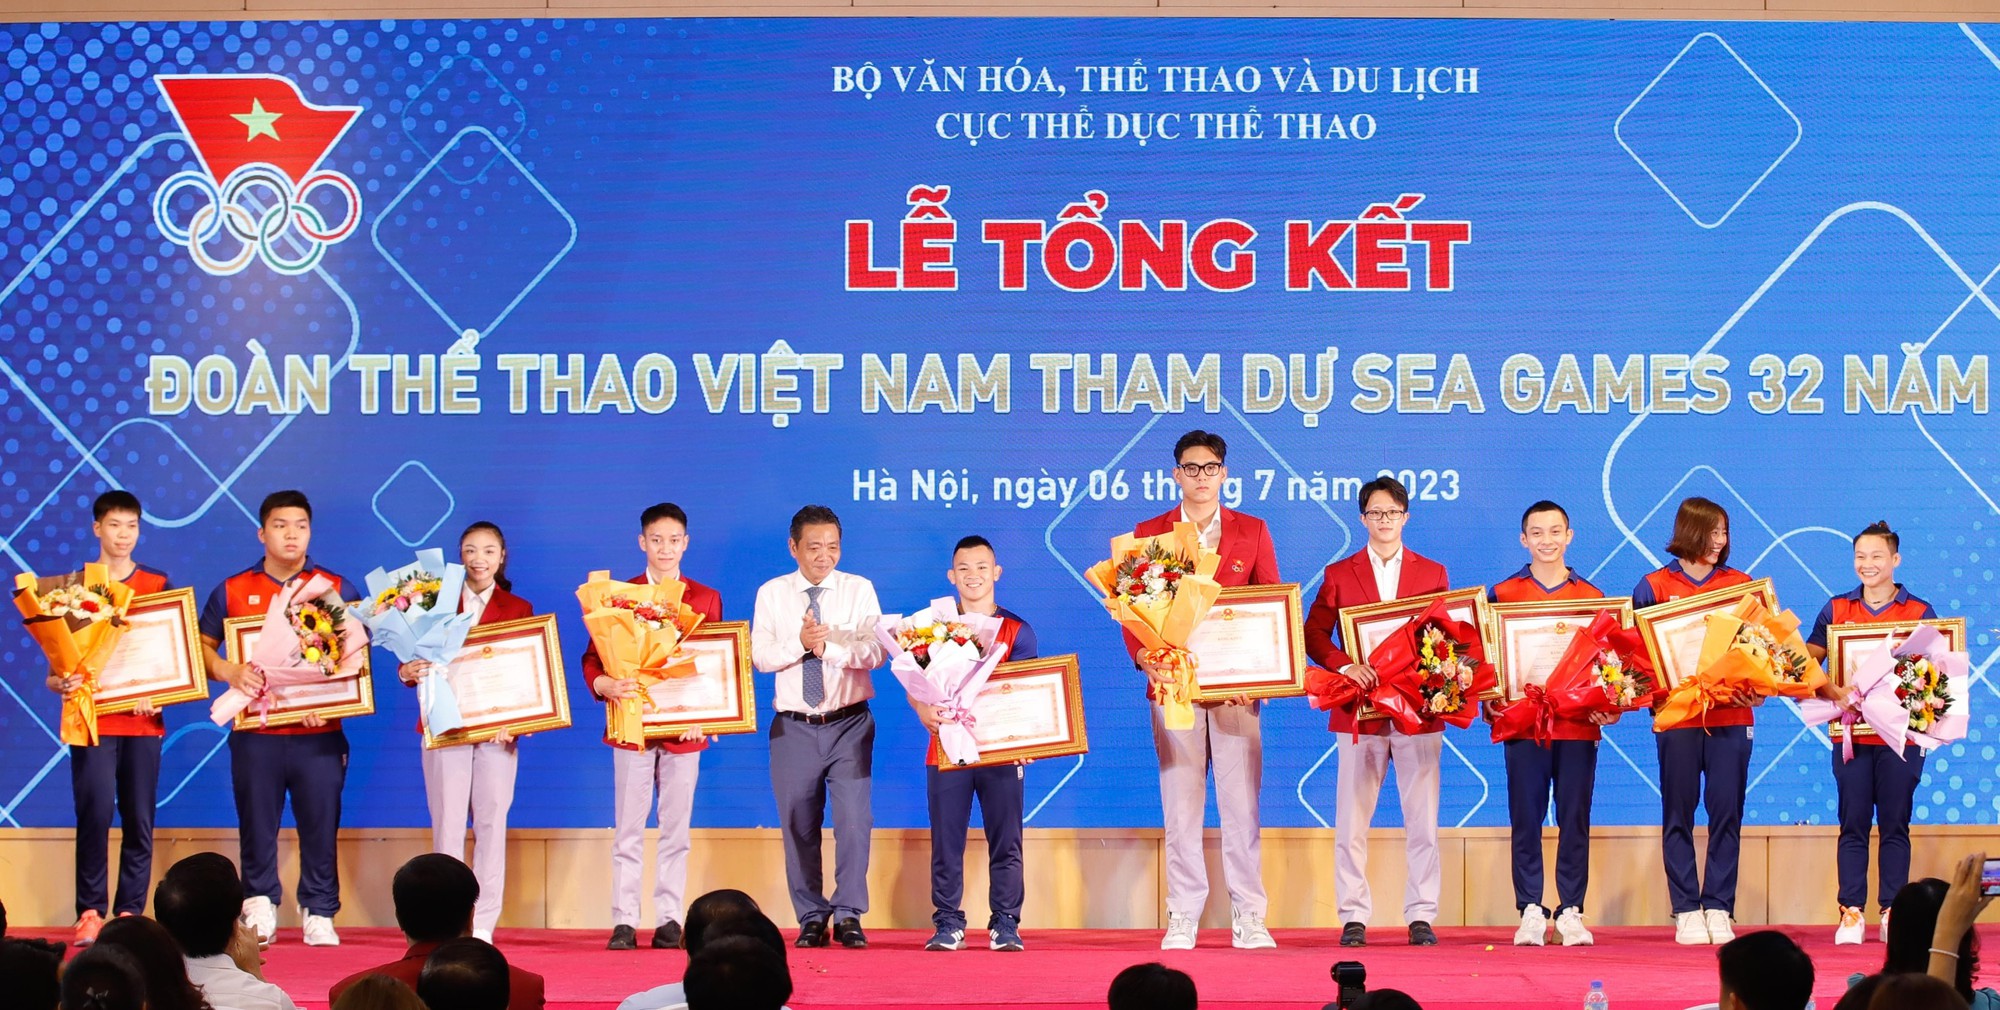 Bộ trưởng Nguyễn Văn Hùng: Thể thao biểu thị cho tinh thần yêu nước, sự đoàn kết và tạo động lực tinh thần cho nhân dân - Ảnh 6.